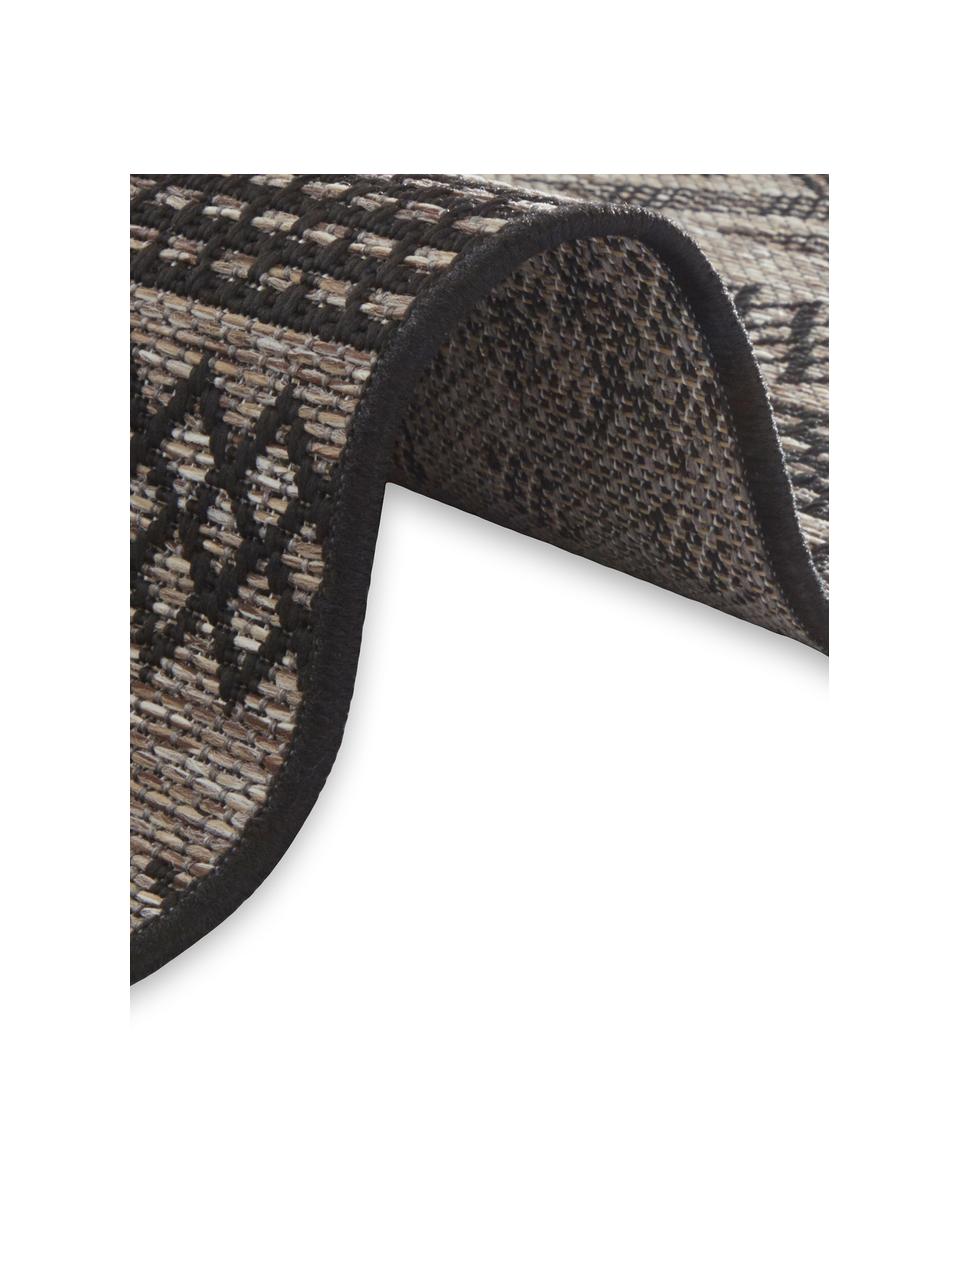 In- & Outdoor-Teppich Sidon mit grafischem Muster, 100% Polypropylen, Beige, Schwarz, B 200 x L 290 cm (Größe L)